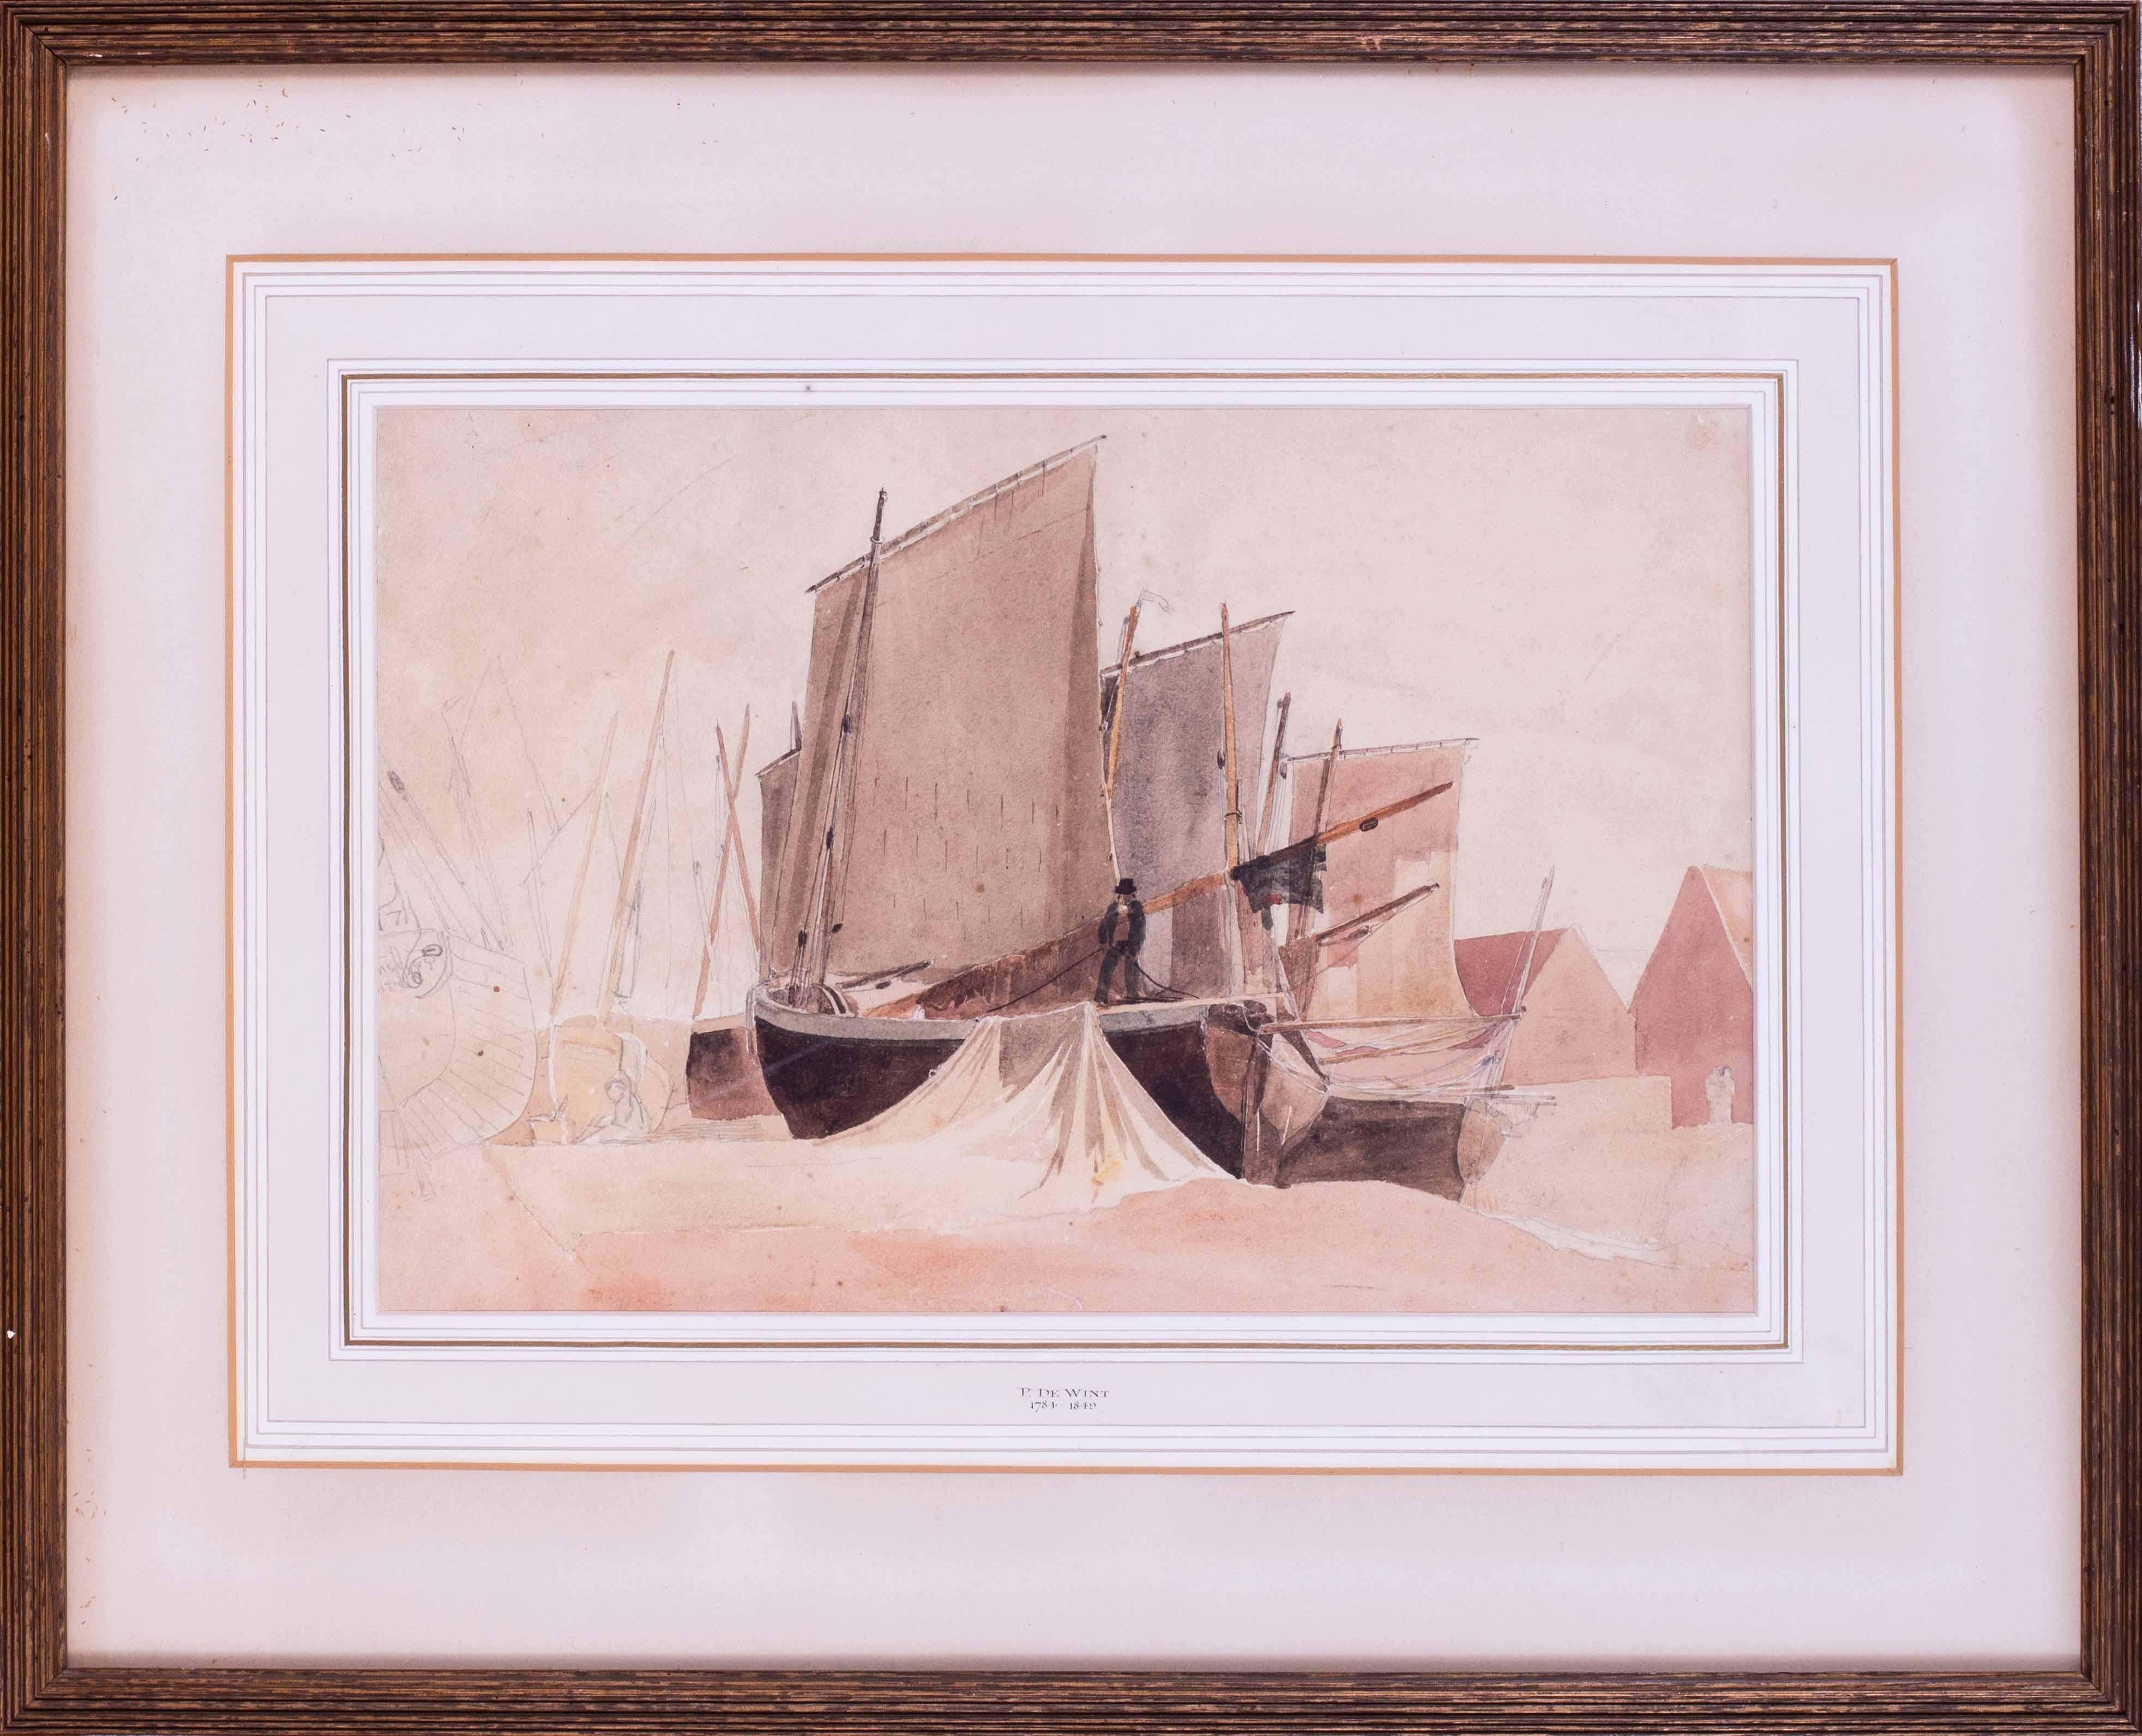 Aquarell von Fischerbooten bei Niedergezeiten aus dem 19. Jahrhundert des britischen Künstlers de Wint